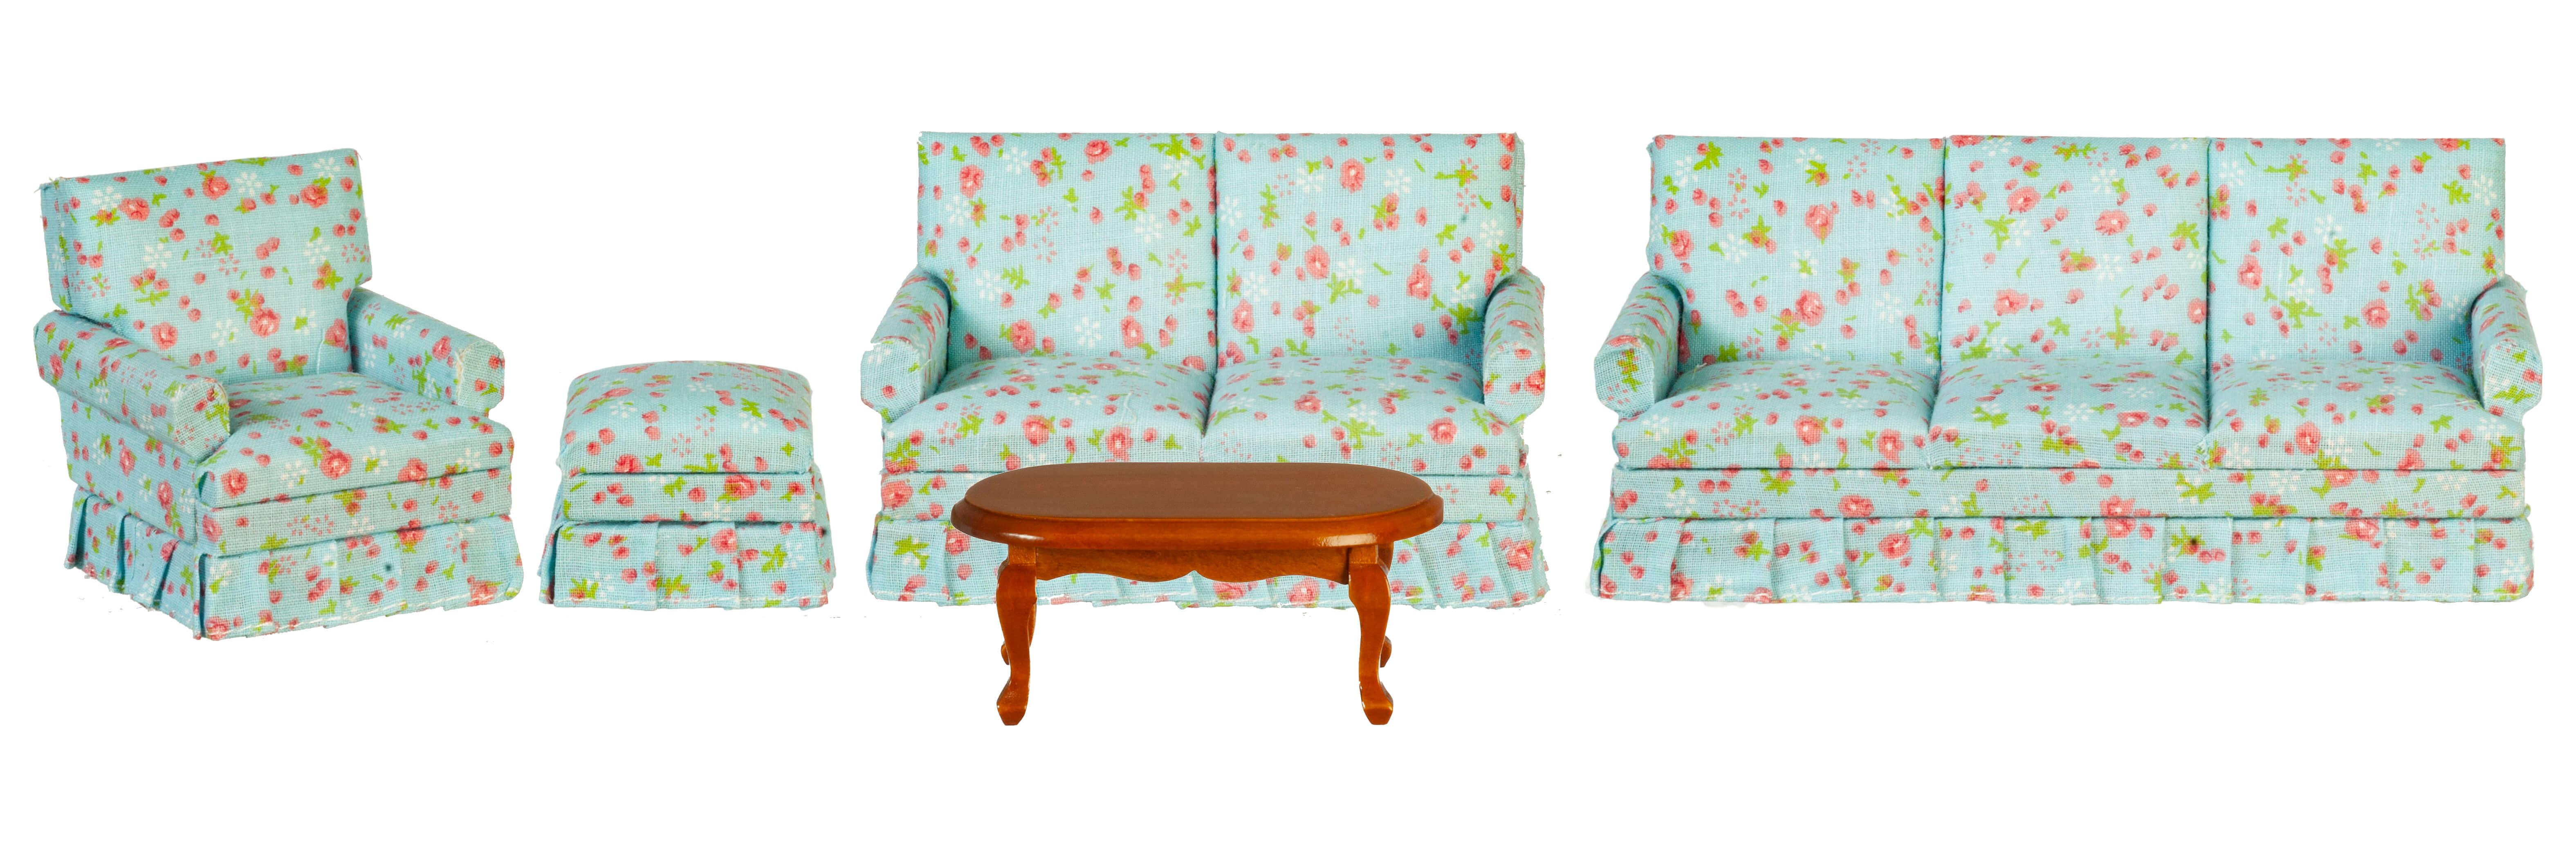 Living Room Furniture Set 5pc - Blue Floral - Walnut